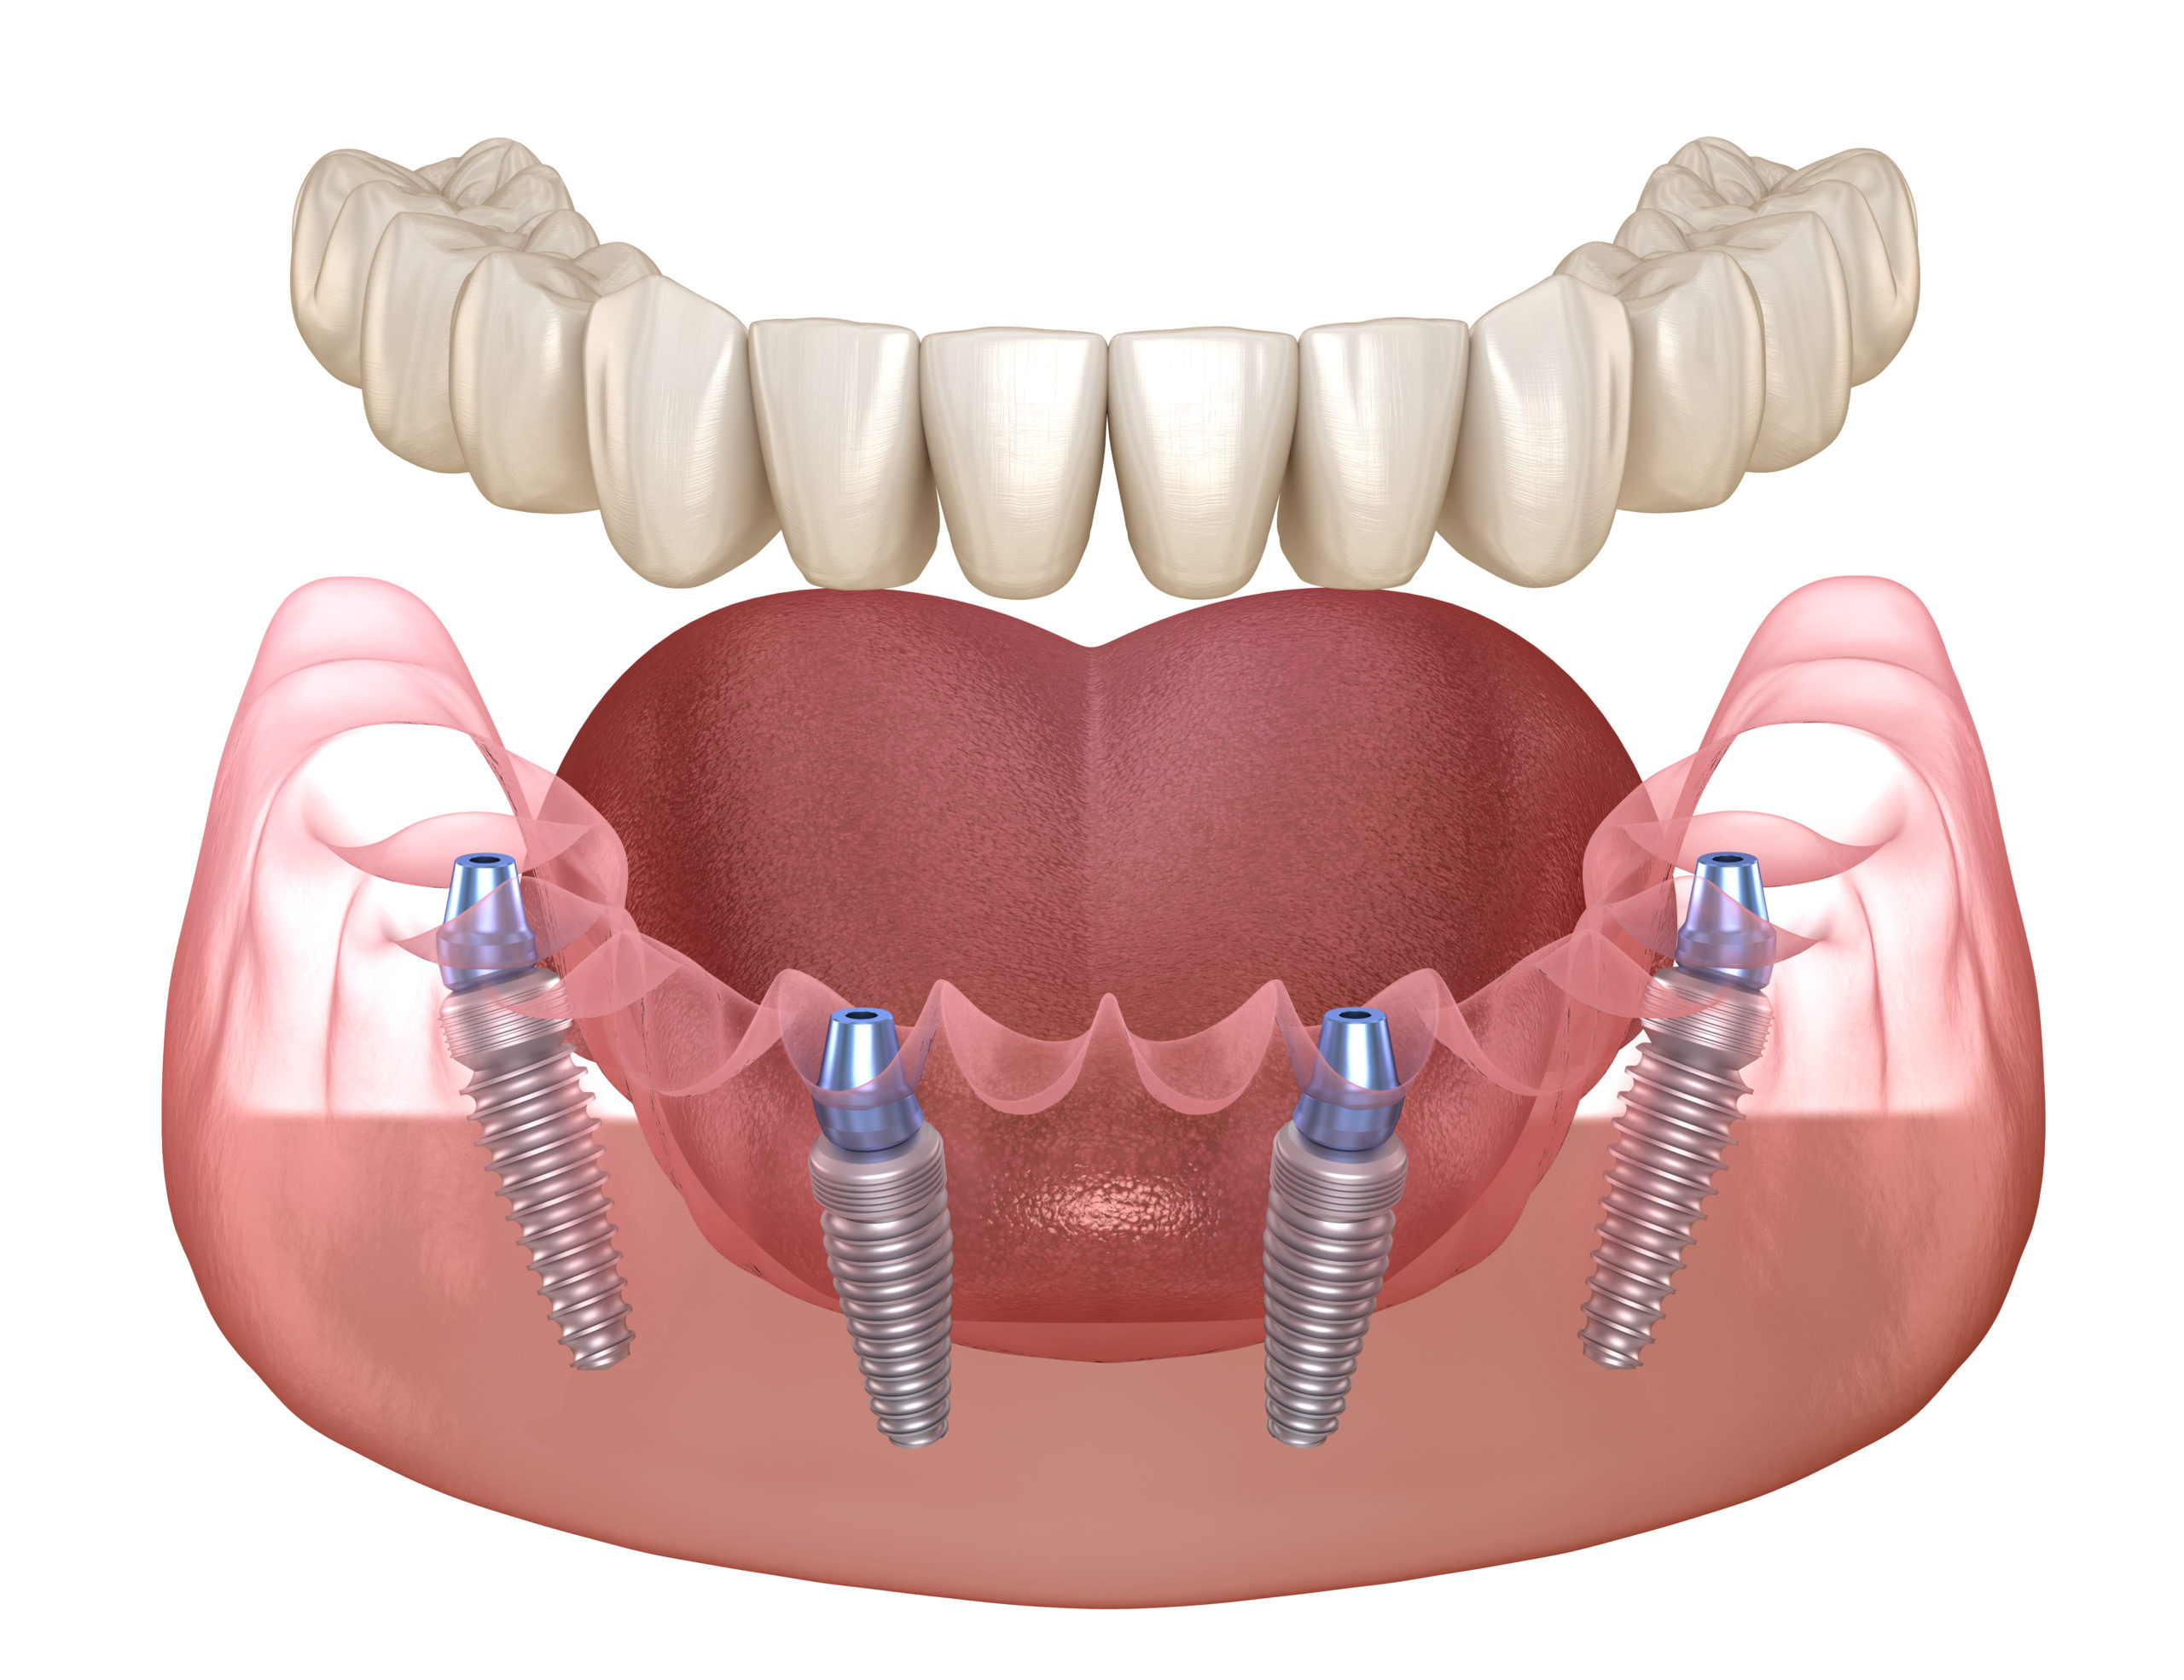 Имплантация зубов all on 6. Несъёмный зубной протез на 6 имплантах. Имплантация челюсти на 6 имплантах. Имплантация all-on-6 (имплантация на 6 имплантах).